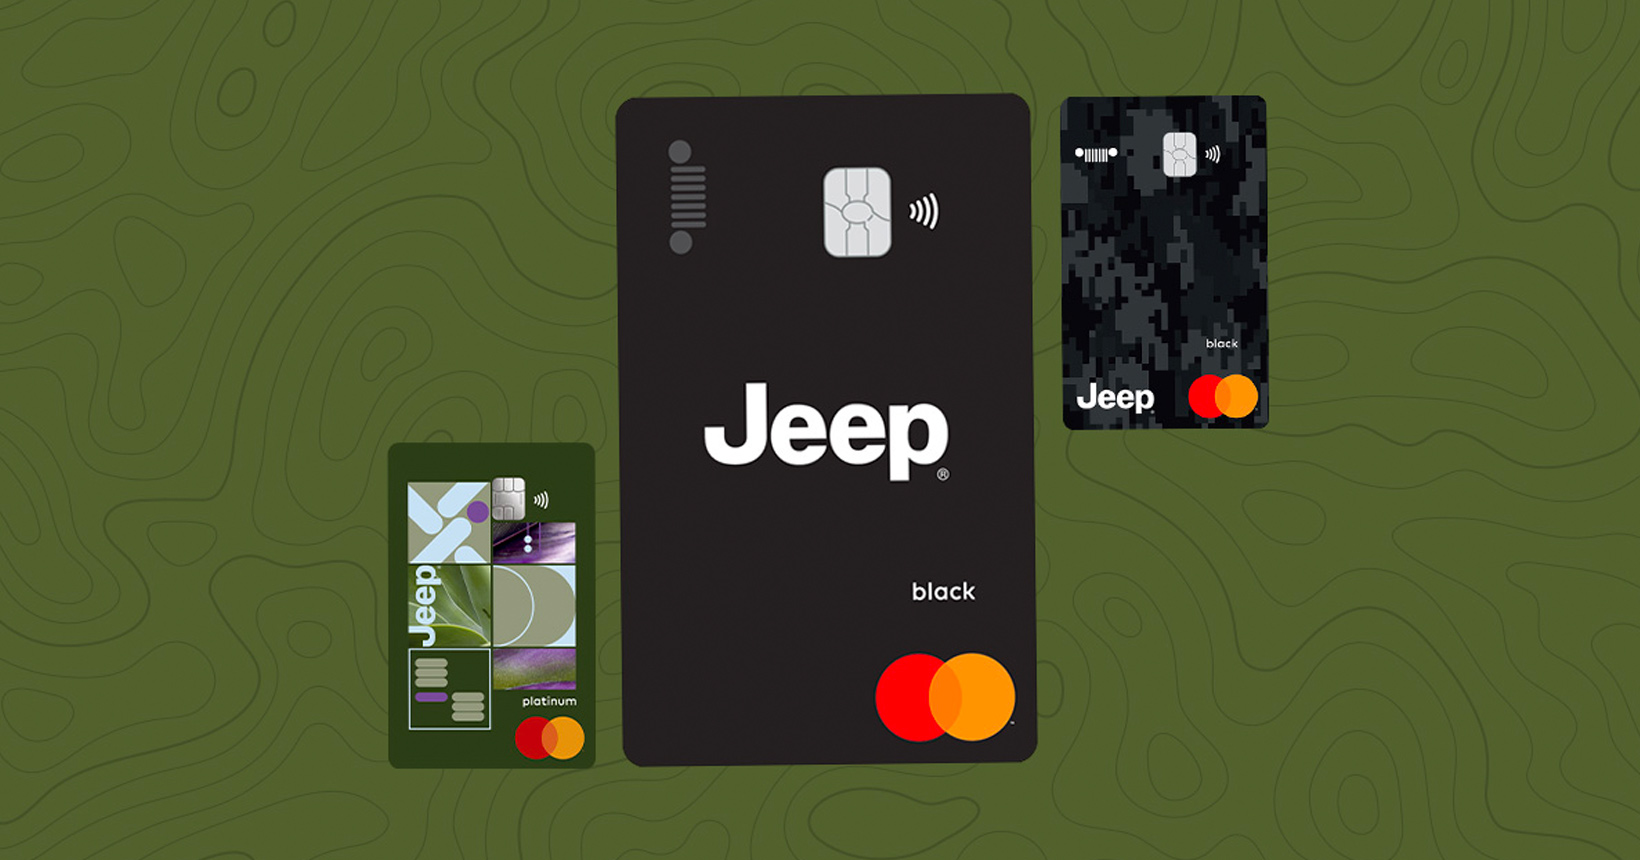 Cartão de crédito Jeep Card Black oferece cashback, sala vip grátis e até upgrade de status em companhia aérea